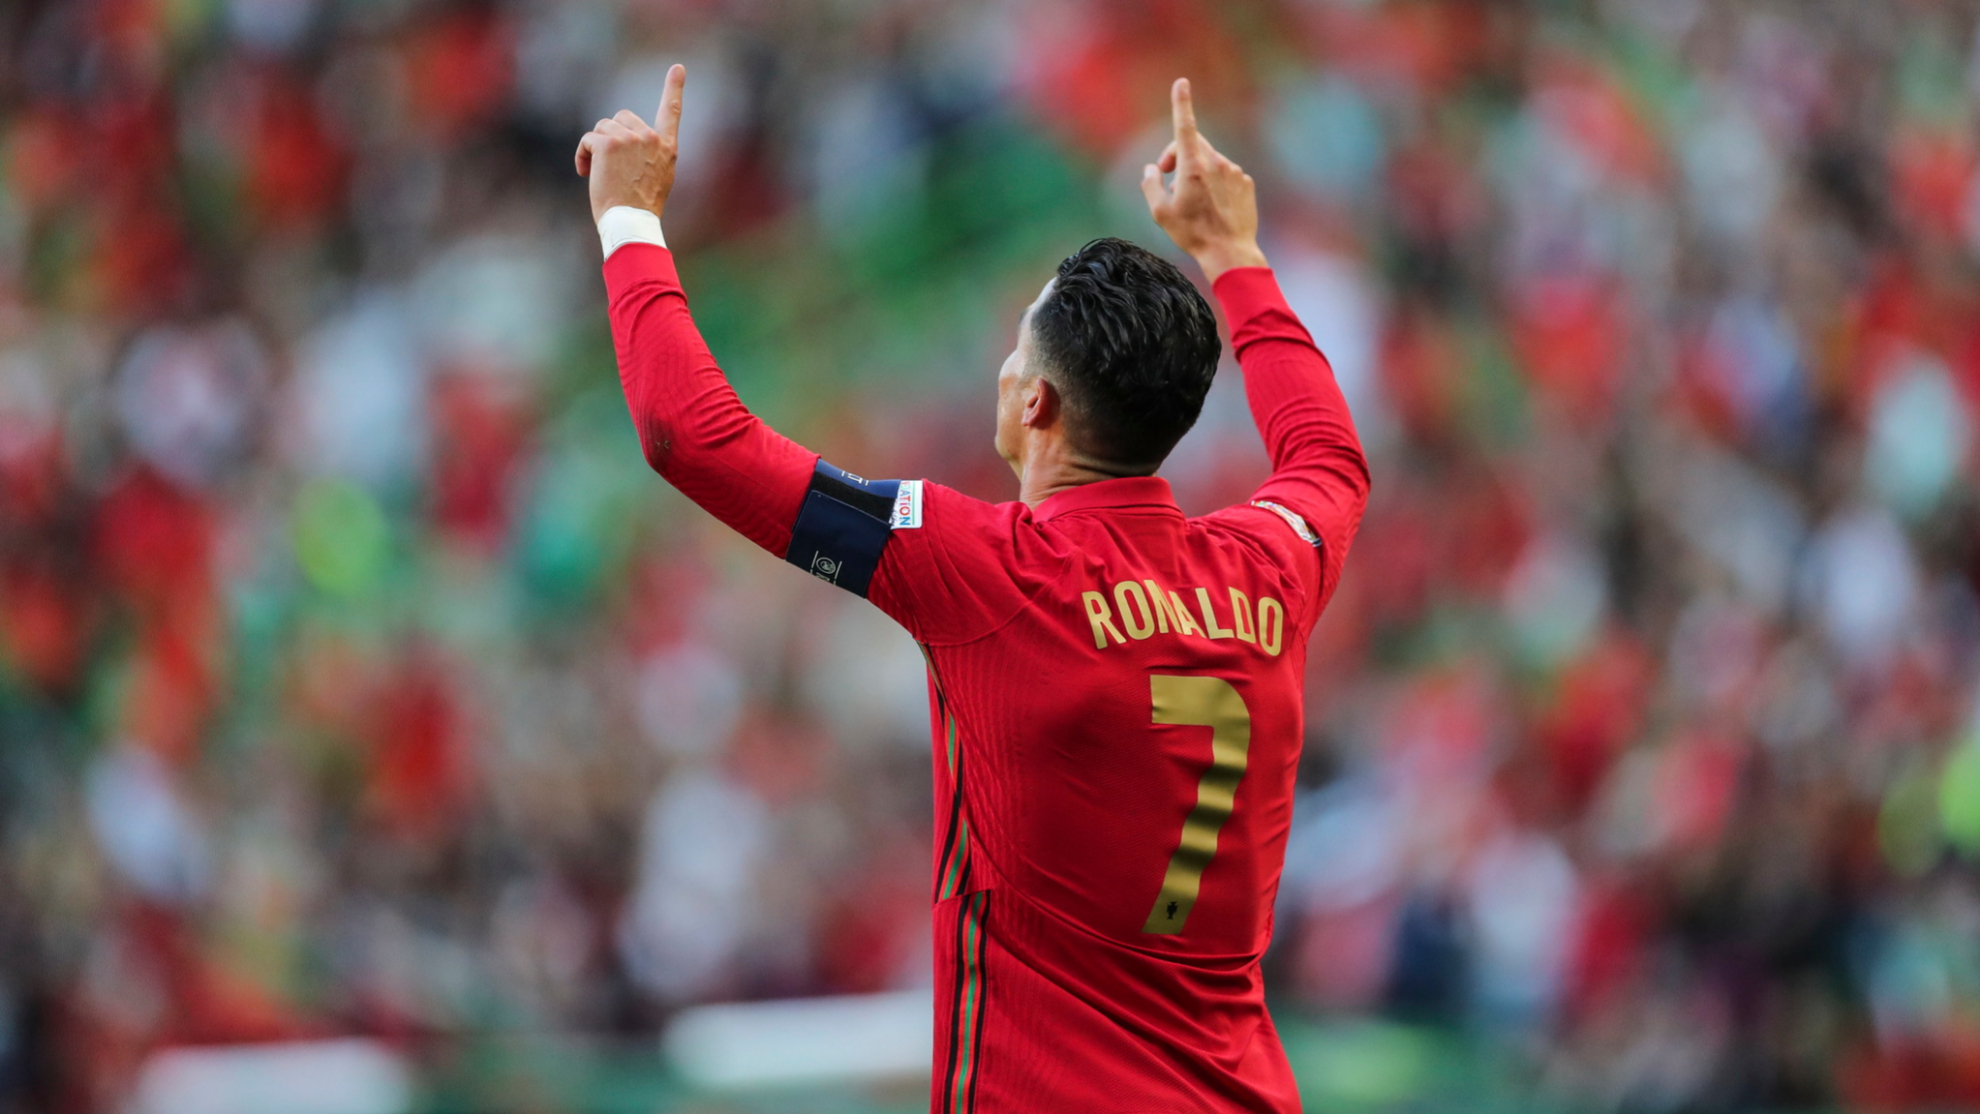 C.Ronaldo, đòi rời tuyển, Bồ Đào Nha: Cùng xem hình ảnh về C.Ronaldo có phản ứng gì đối với việc ông quyết định đòi rời đội tuyển Bồ Đào Nha sau khi bị loại khỏi World Cup